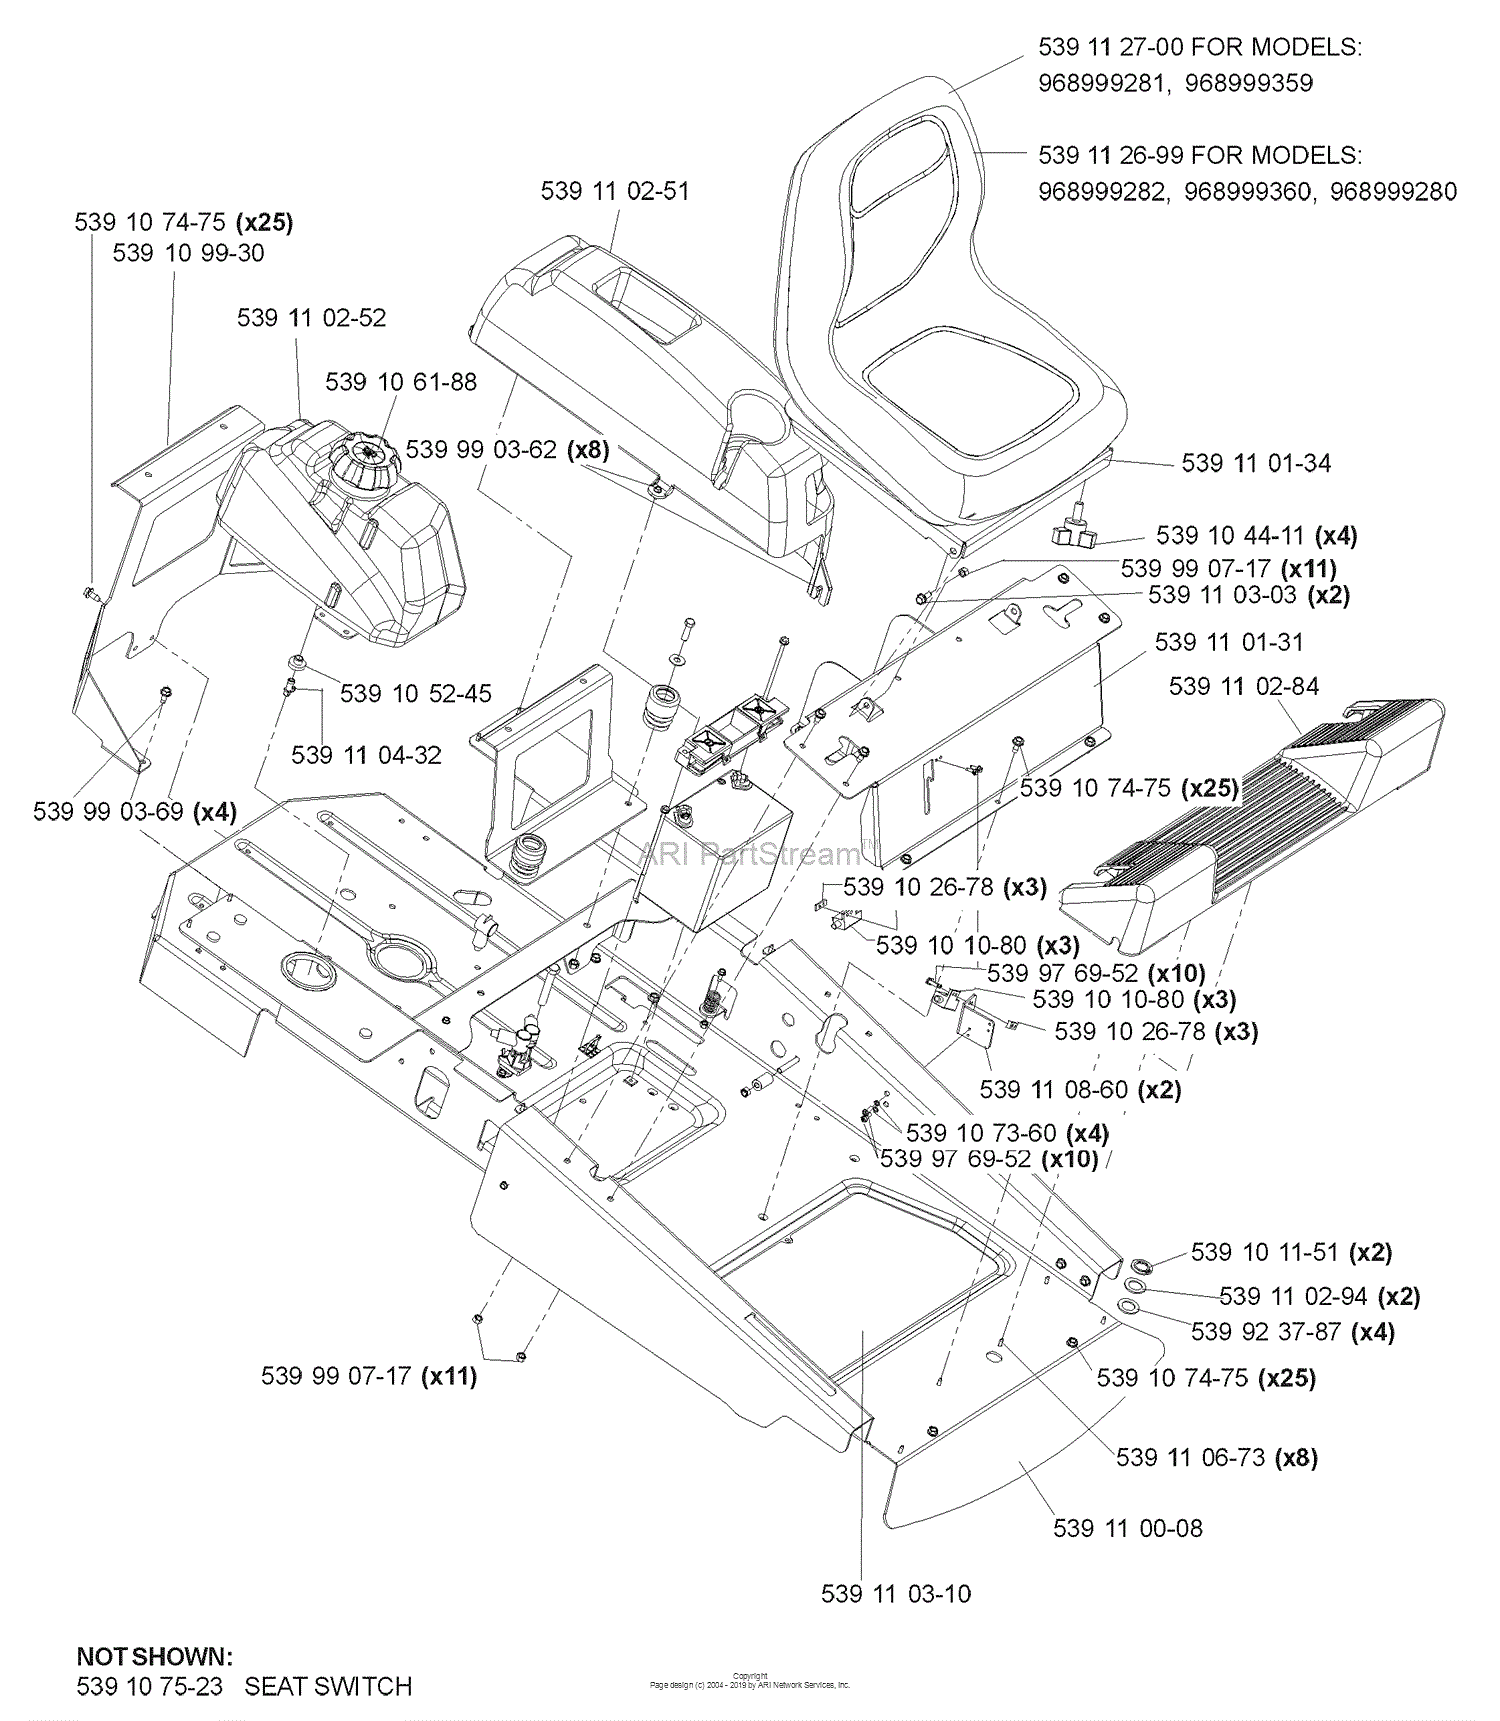 Husqvarna Z 4217 BIA (968999280) (2006-04) Parts Diagram for Main Frame (A)